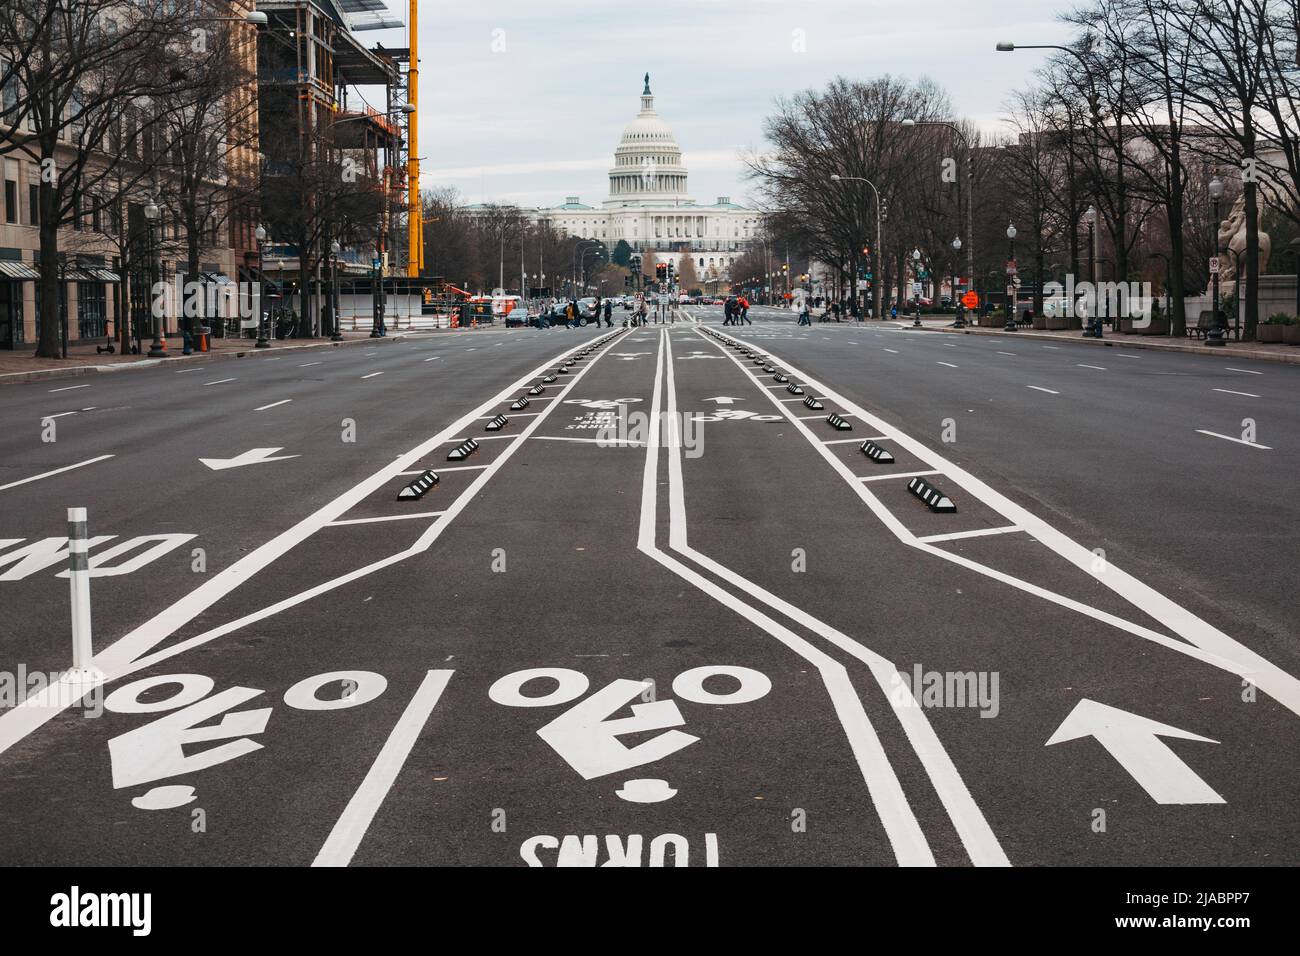 Pistes cyclables au milieu de la route près du bâtiment du Capitole des États-Unis, Washington, D.C. Banque D'Images